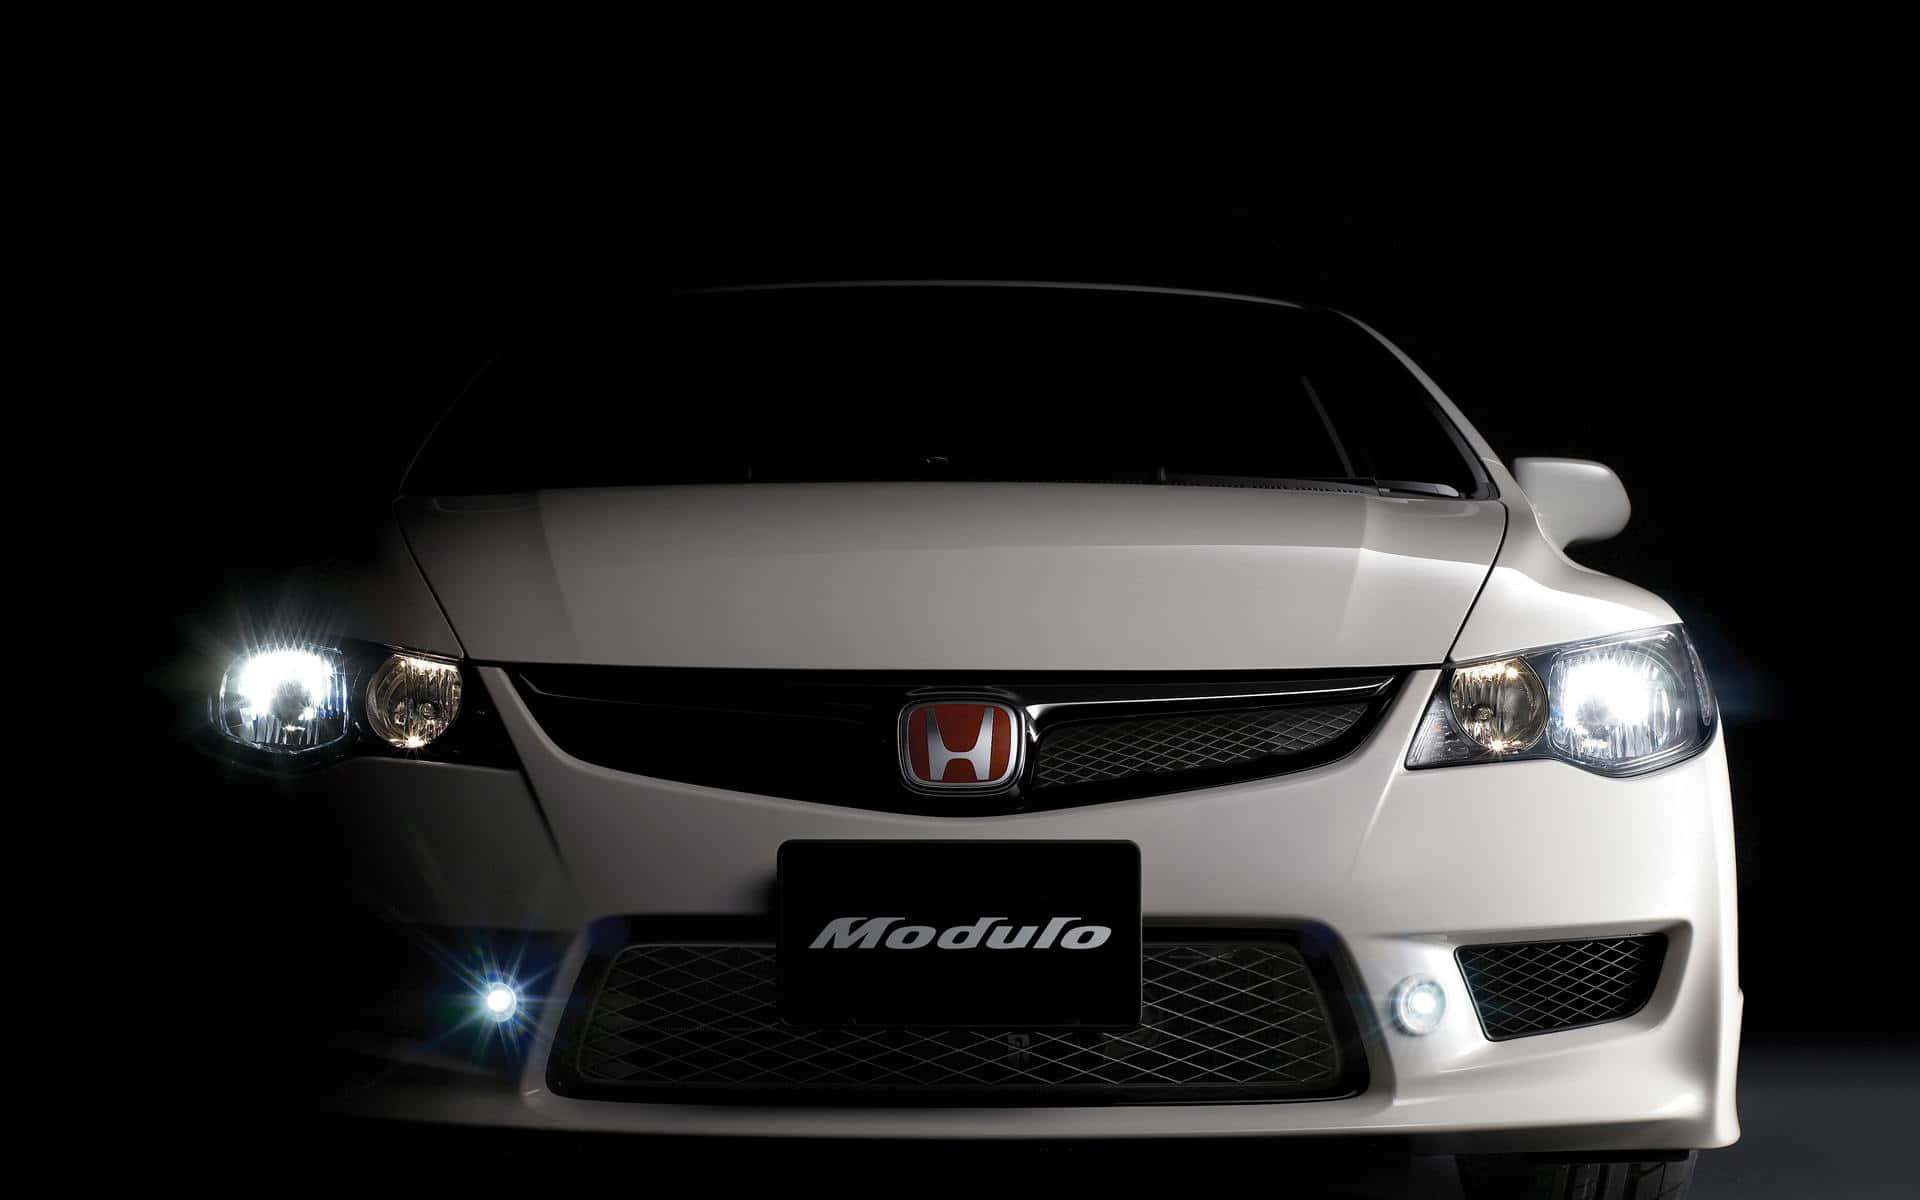 The iconic Honda logo on a sleek black background